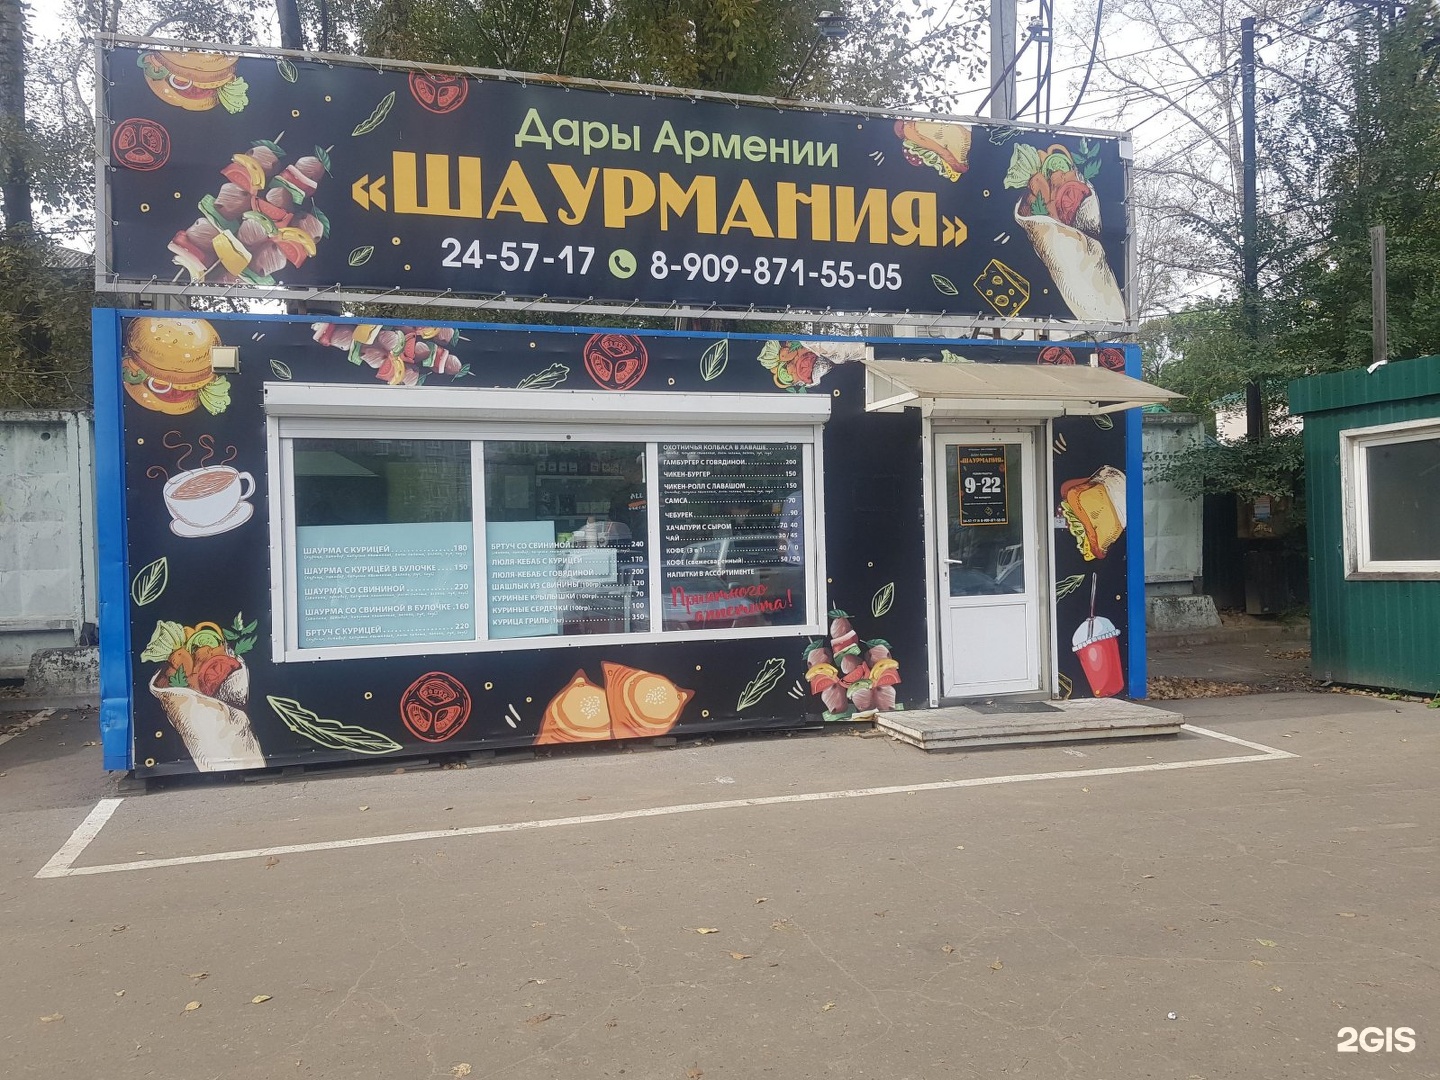 армянский магазин в москве